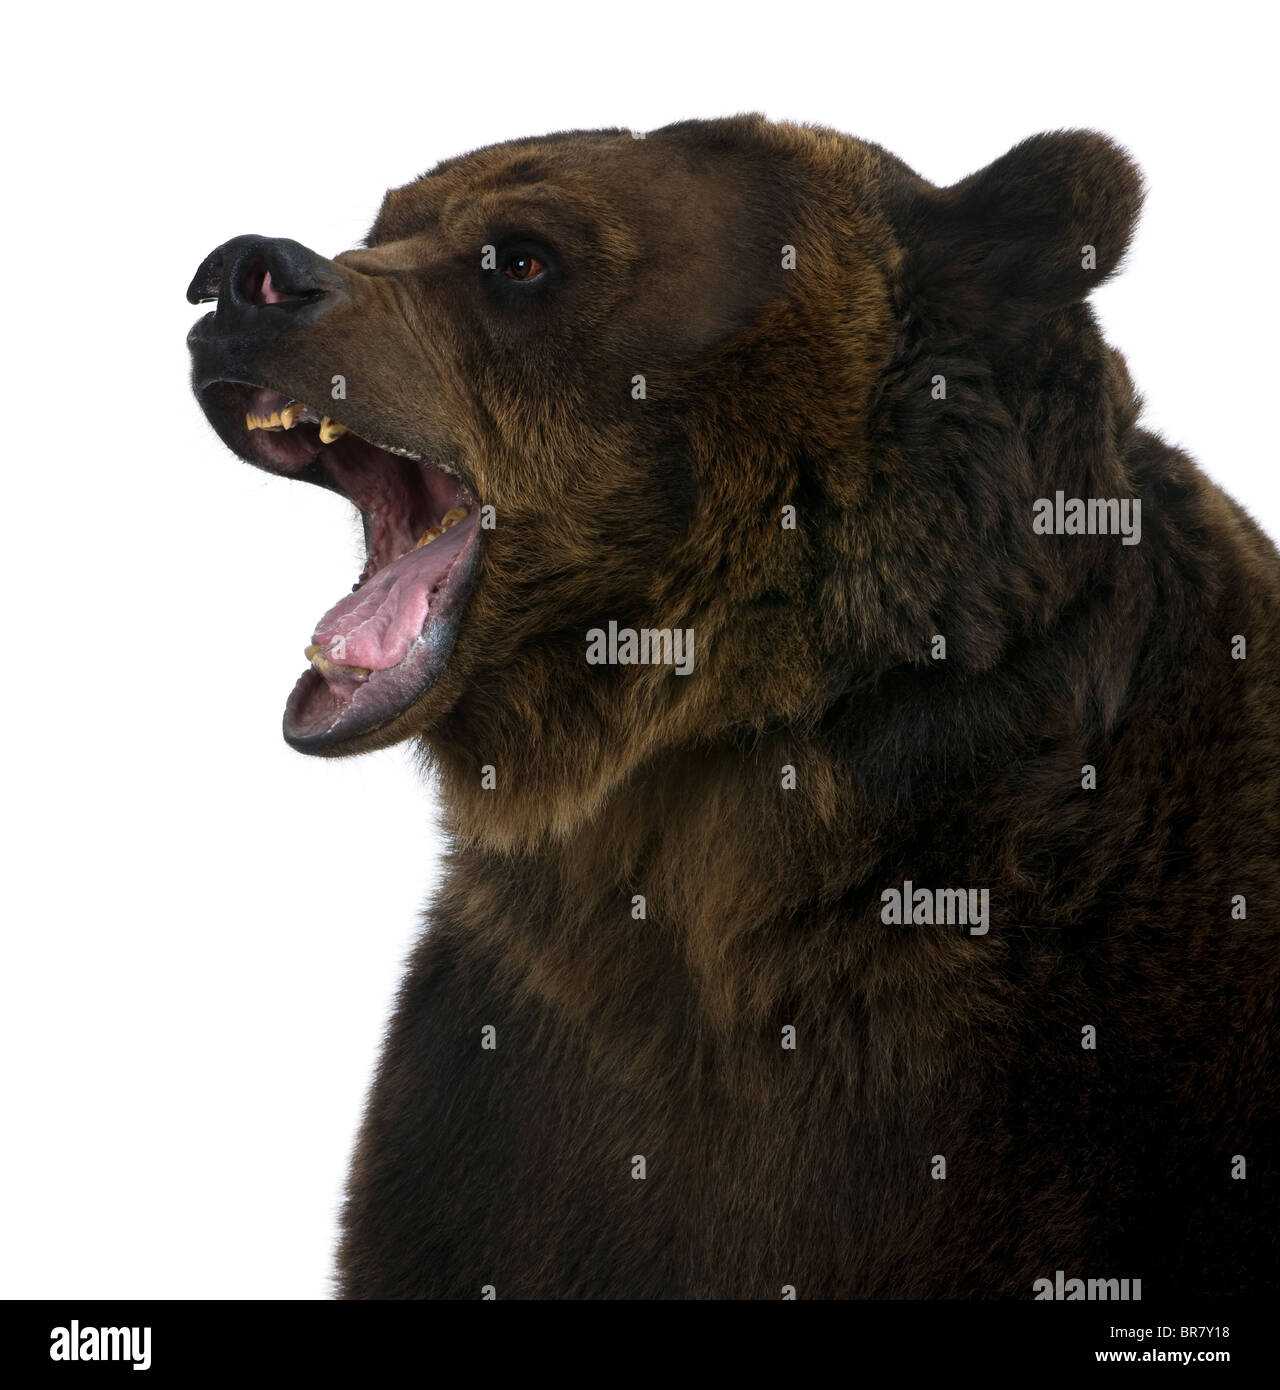 Orso grizzly, dieci anni, ringhiando davanti a uno sfondo bianco Foto Stock